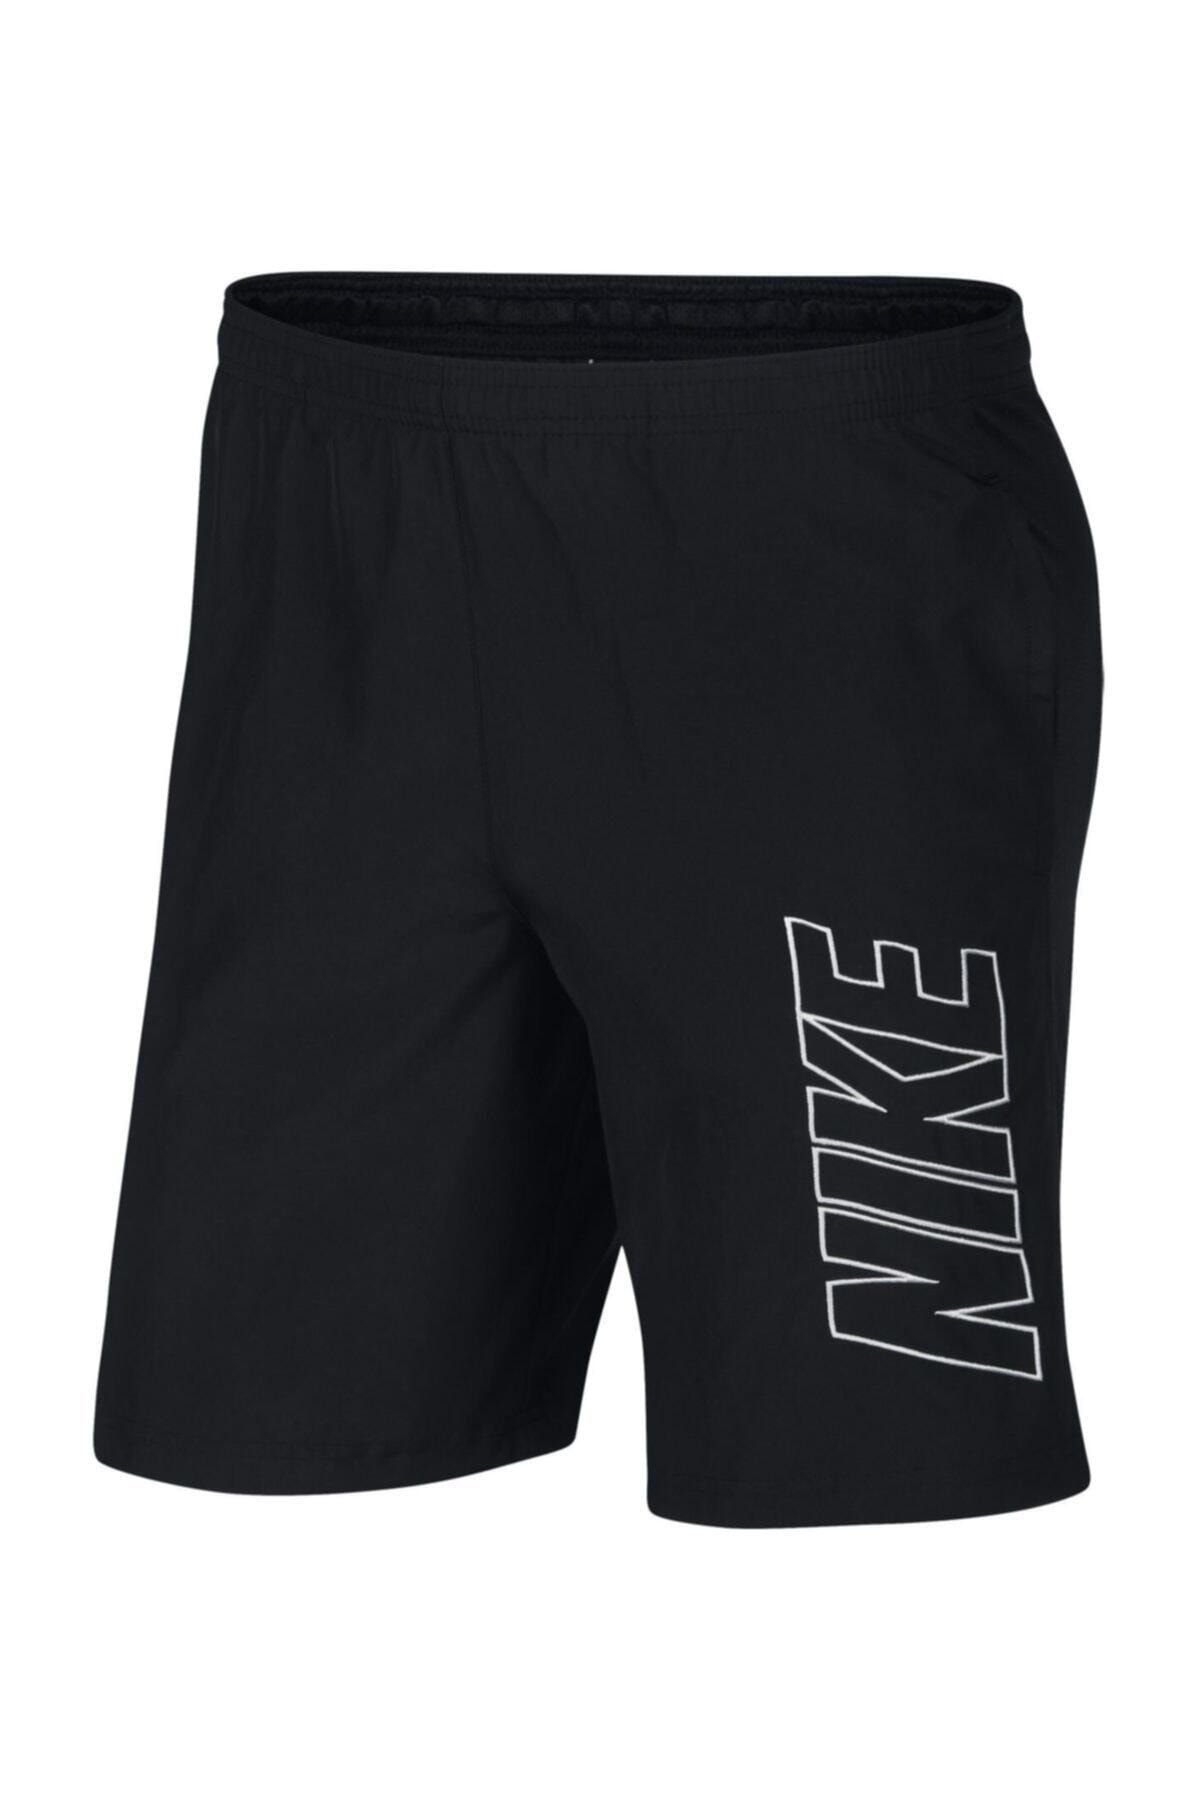 Nike Erkek Siyah Spor Şort - Ar7656-010